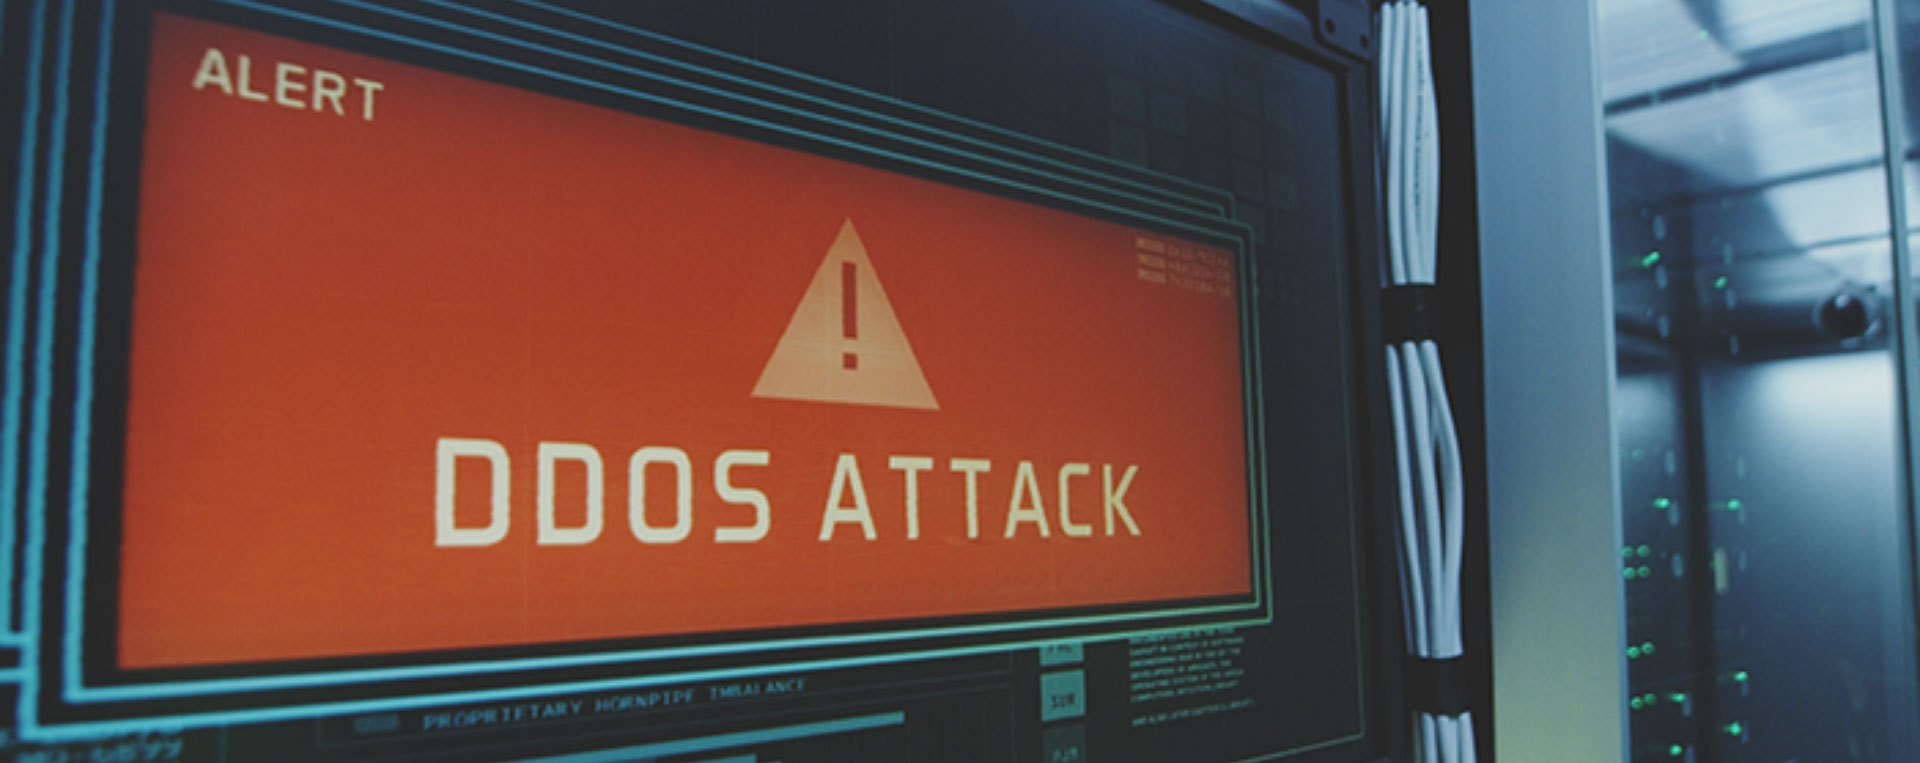 Sedikit Mengenal DDos Attack yang Bisa Menyerang Website